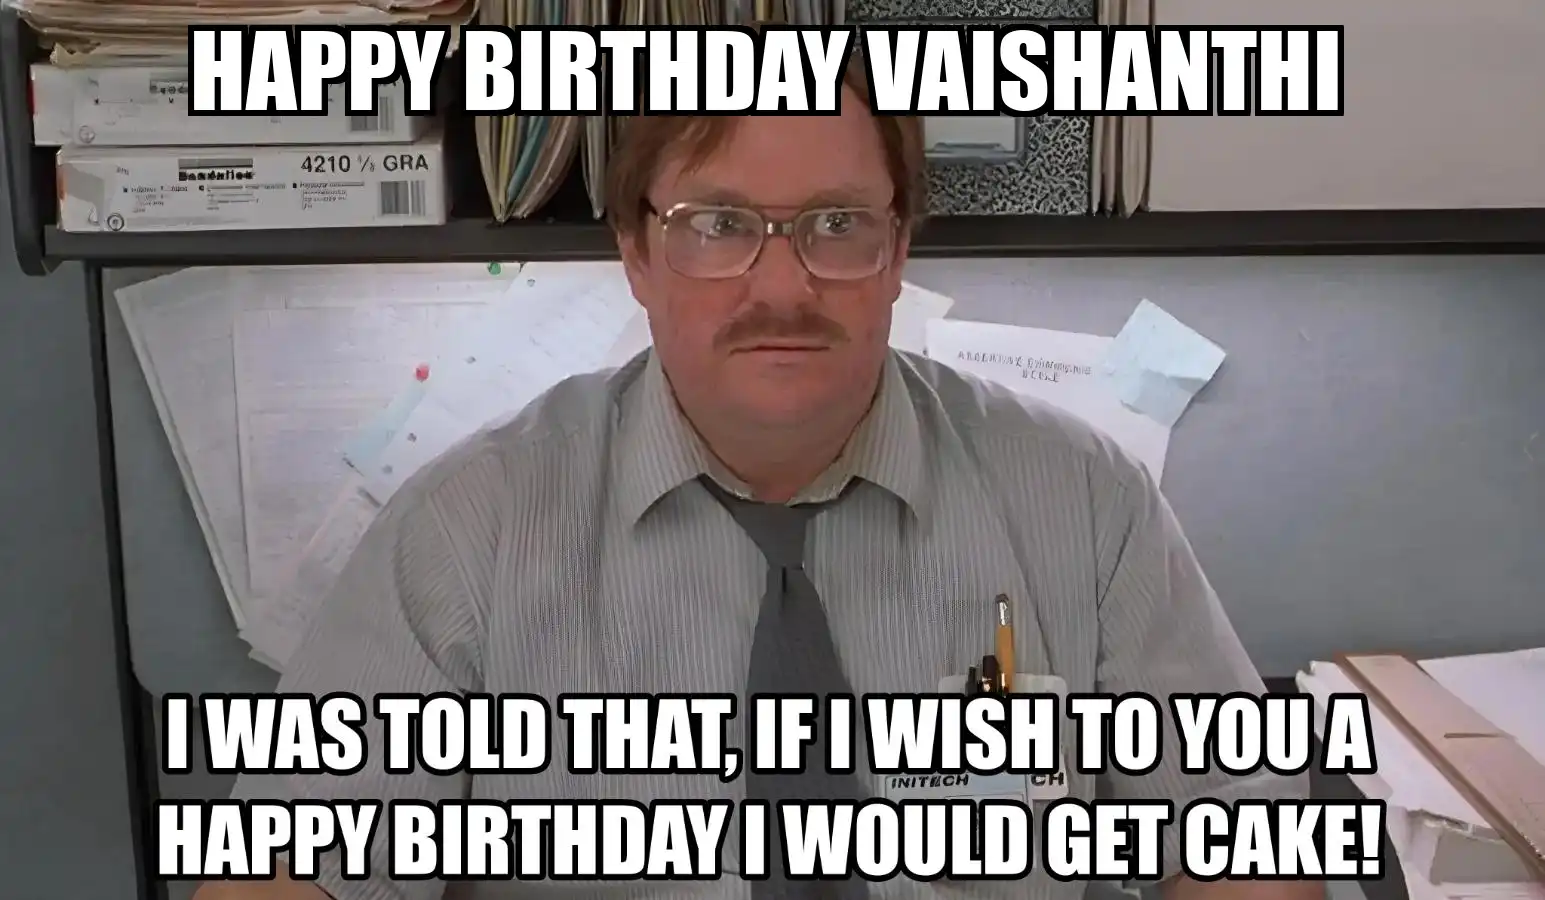 Happy Birthday Vaishanthi I Would Get A Cake Meme